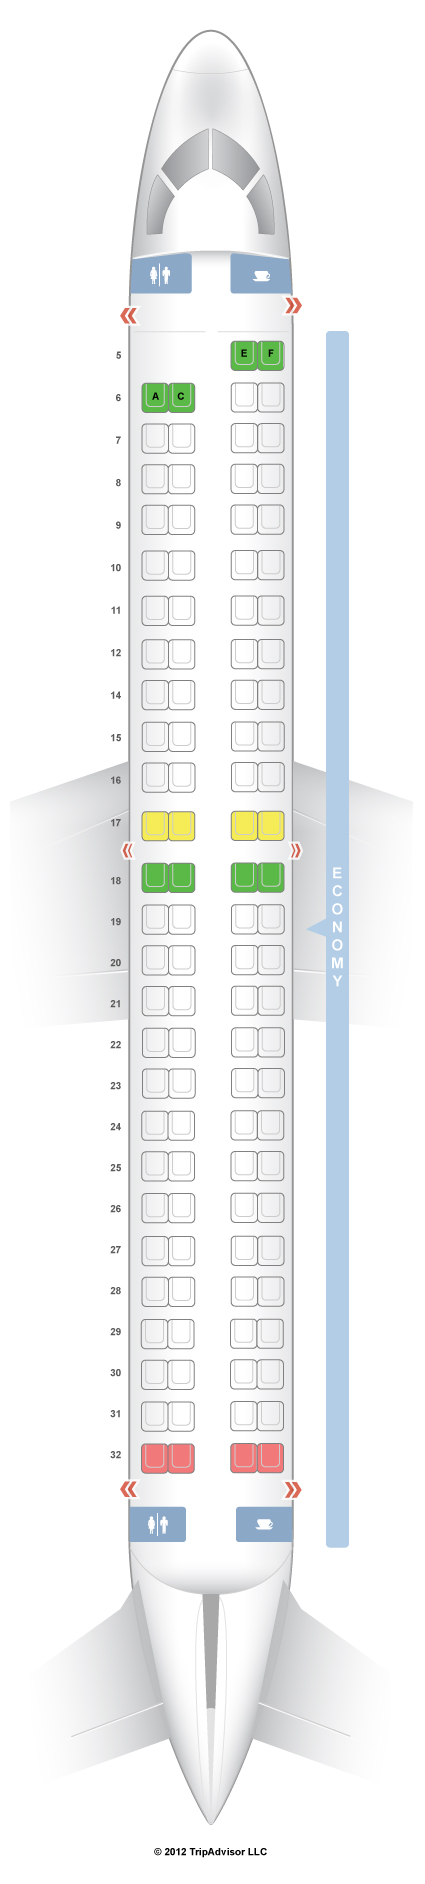 Seatguru Seat Map Copa Airlines Seatguru